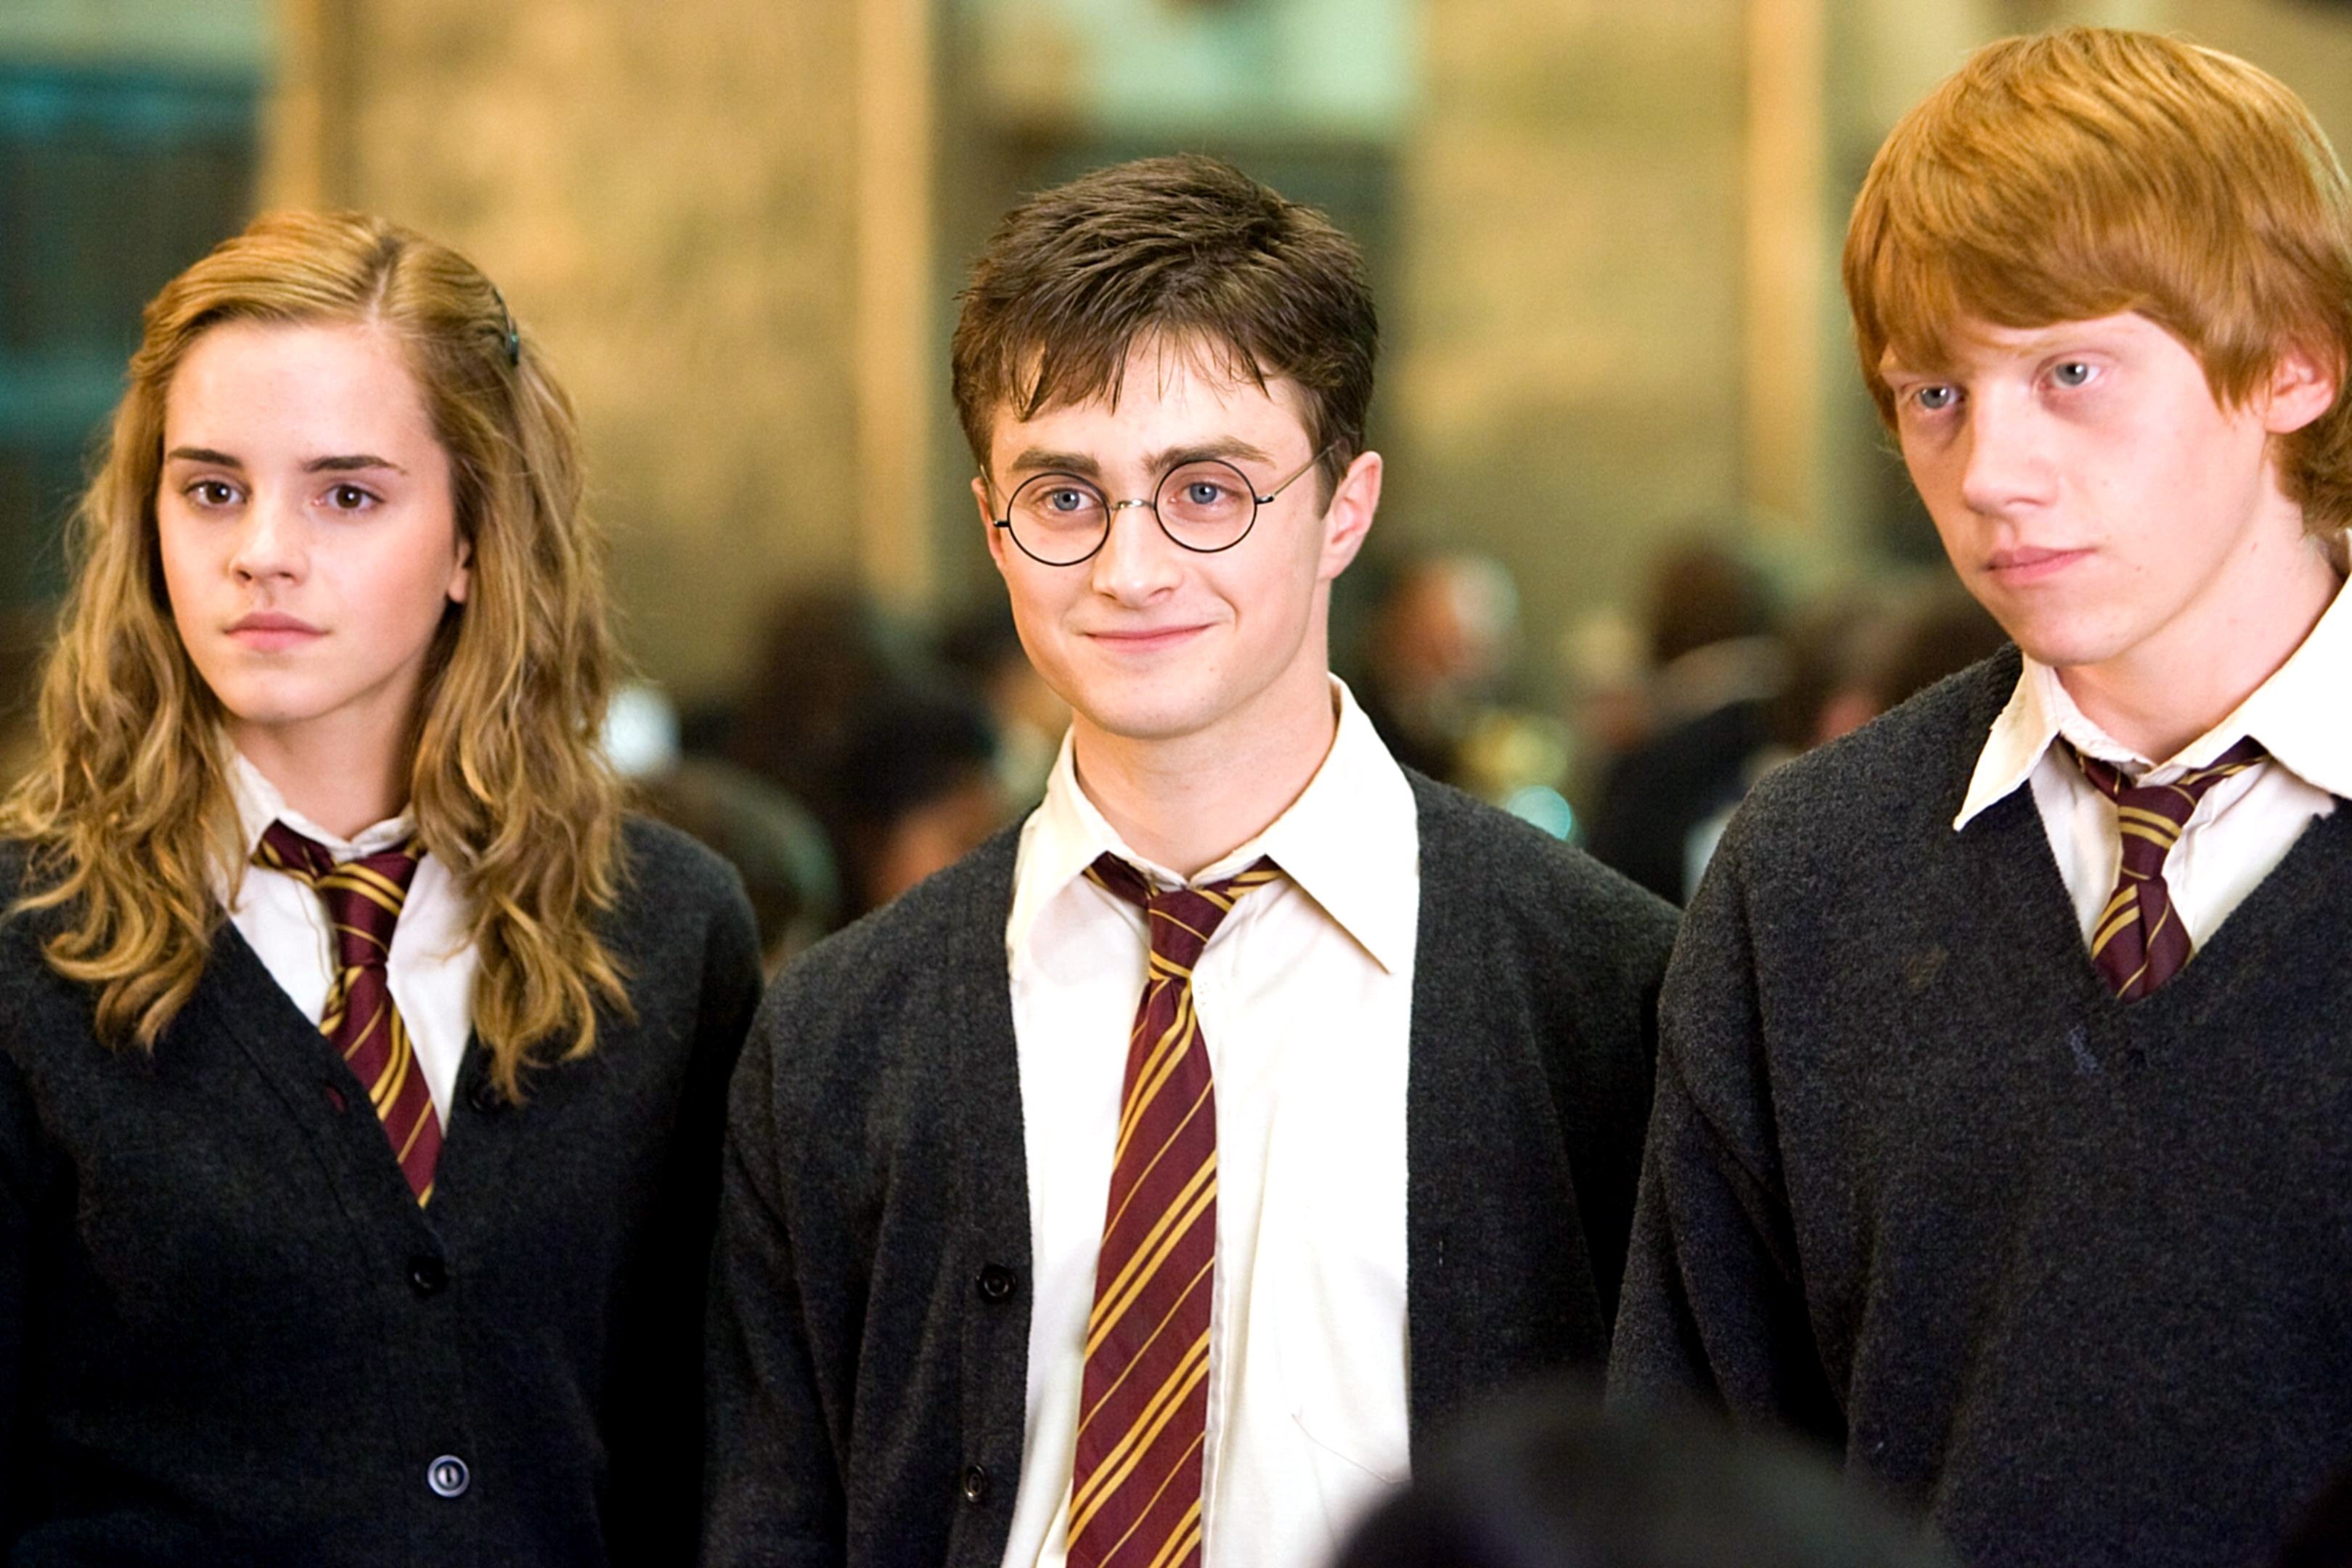 Mégis hol írta Rowling a Harry Pottert?